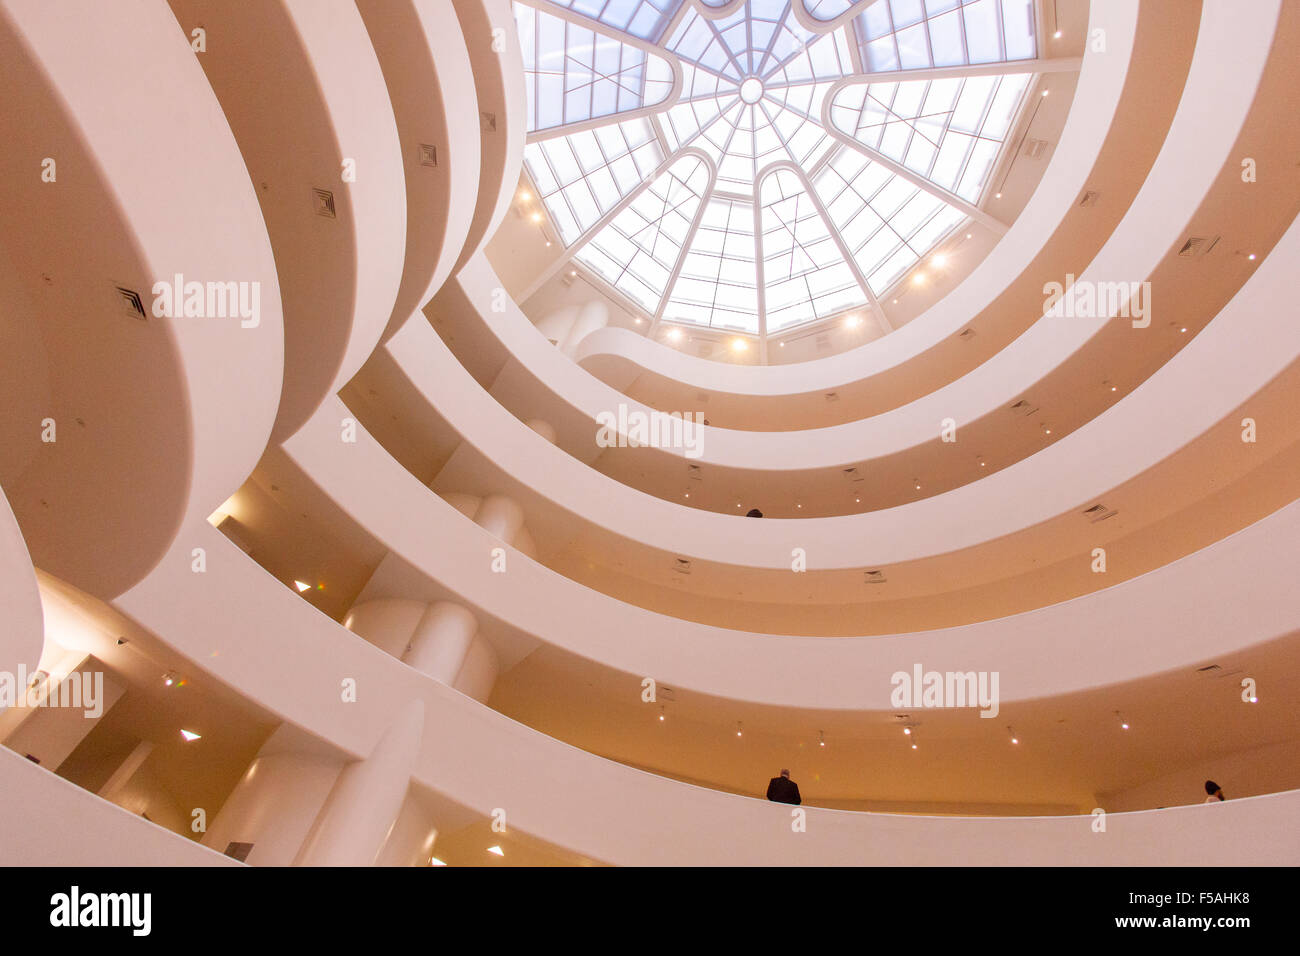 Le Musée Guggenheim de New York City, États-Unis d'Amérique. Conçu par Frank Lloyd Wright. Banque D'Images